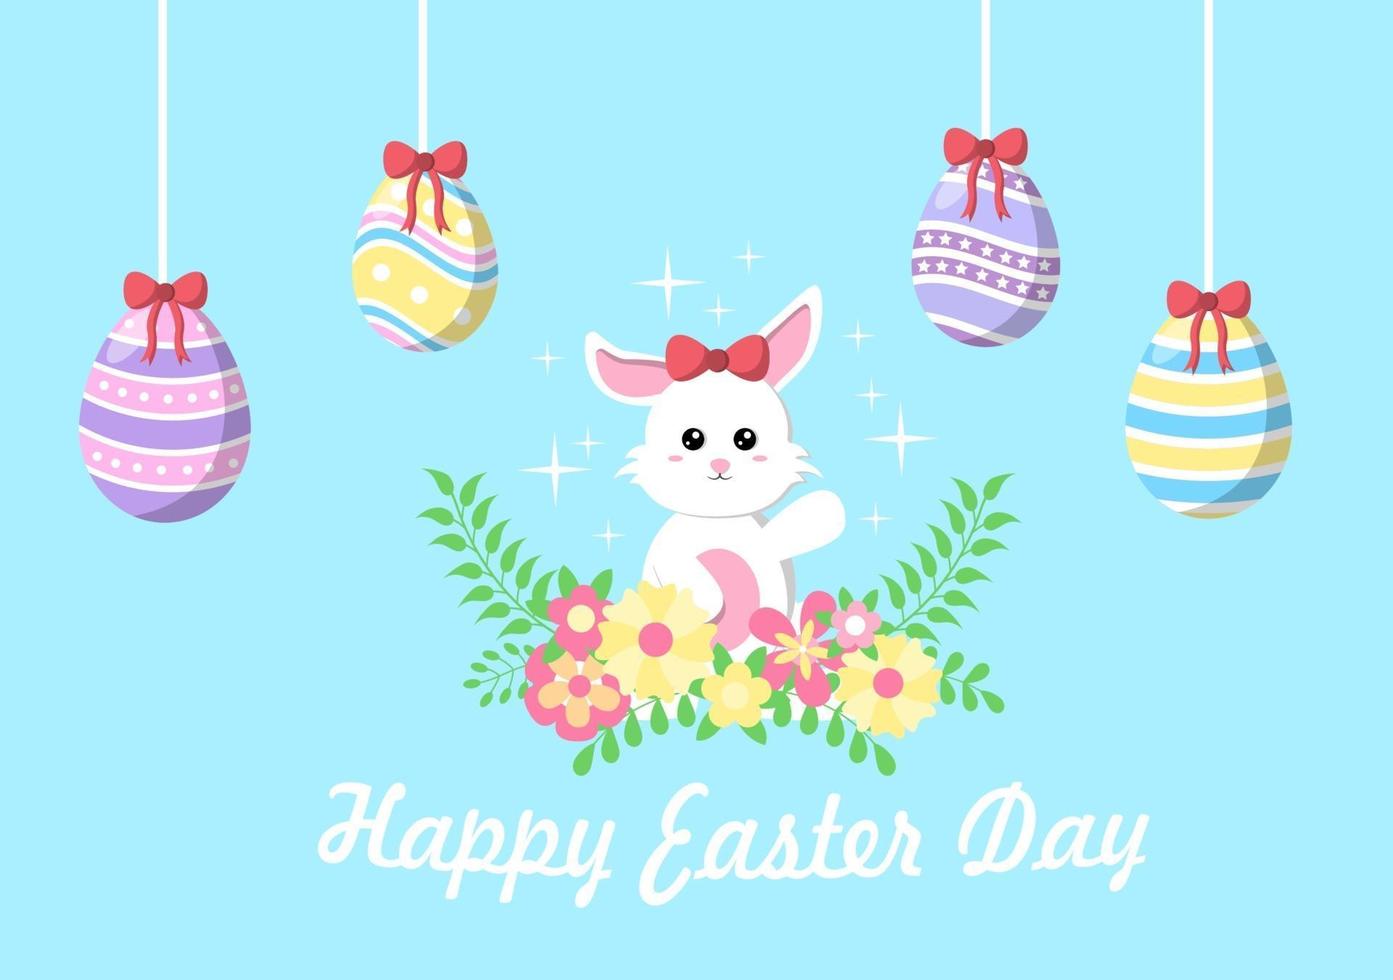 joyeux jour de Pâques fond d'illustration design plat pour affiche, invitation et carte de voeux. concept de lapin et oeufs. vecteur